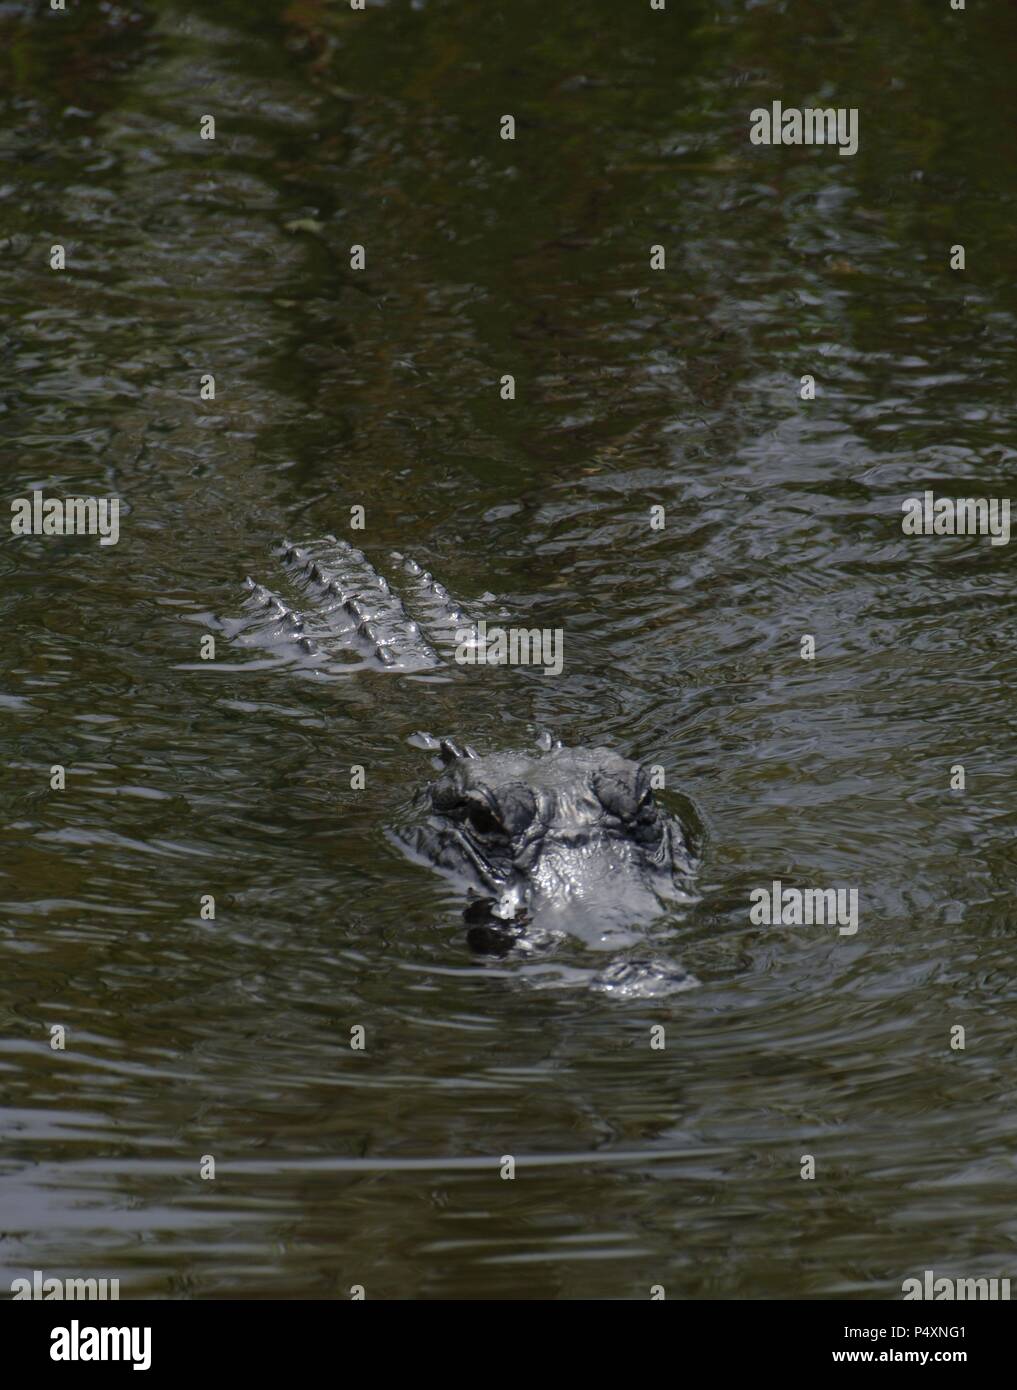 Caimano (alligatorid crocodylians). Parco nazionale delle Everglades. Florida. Stati Uniti d'America. Foto Stock